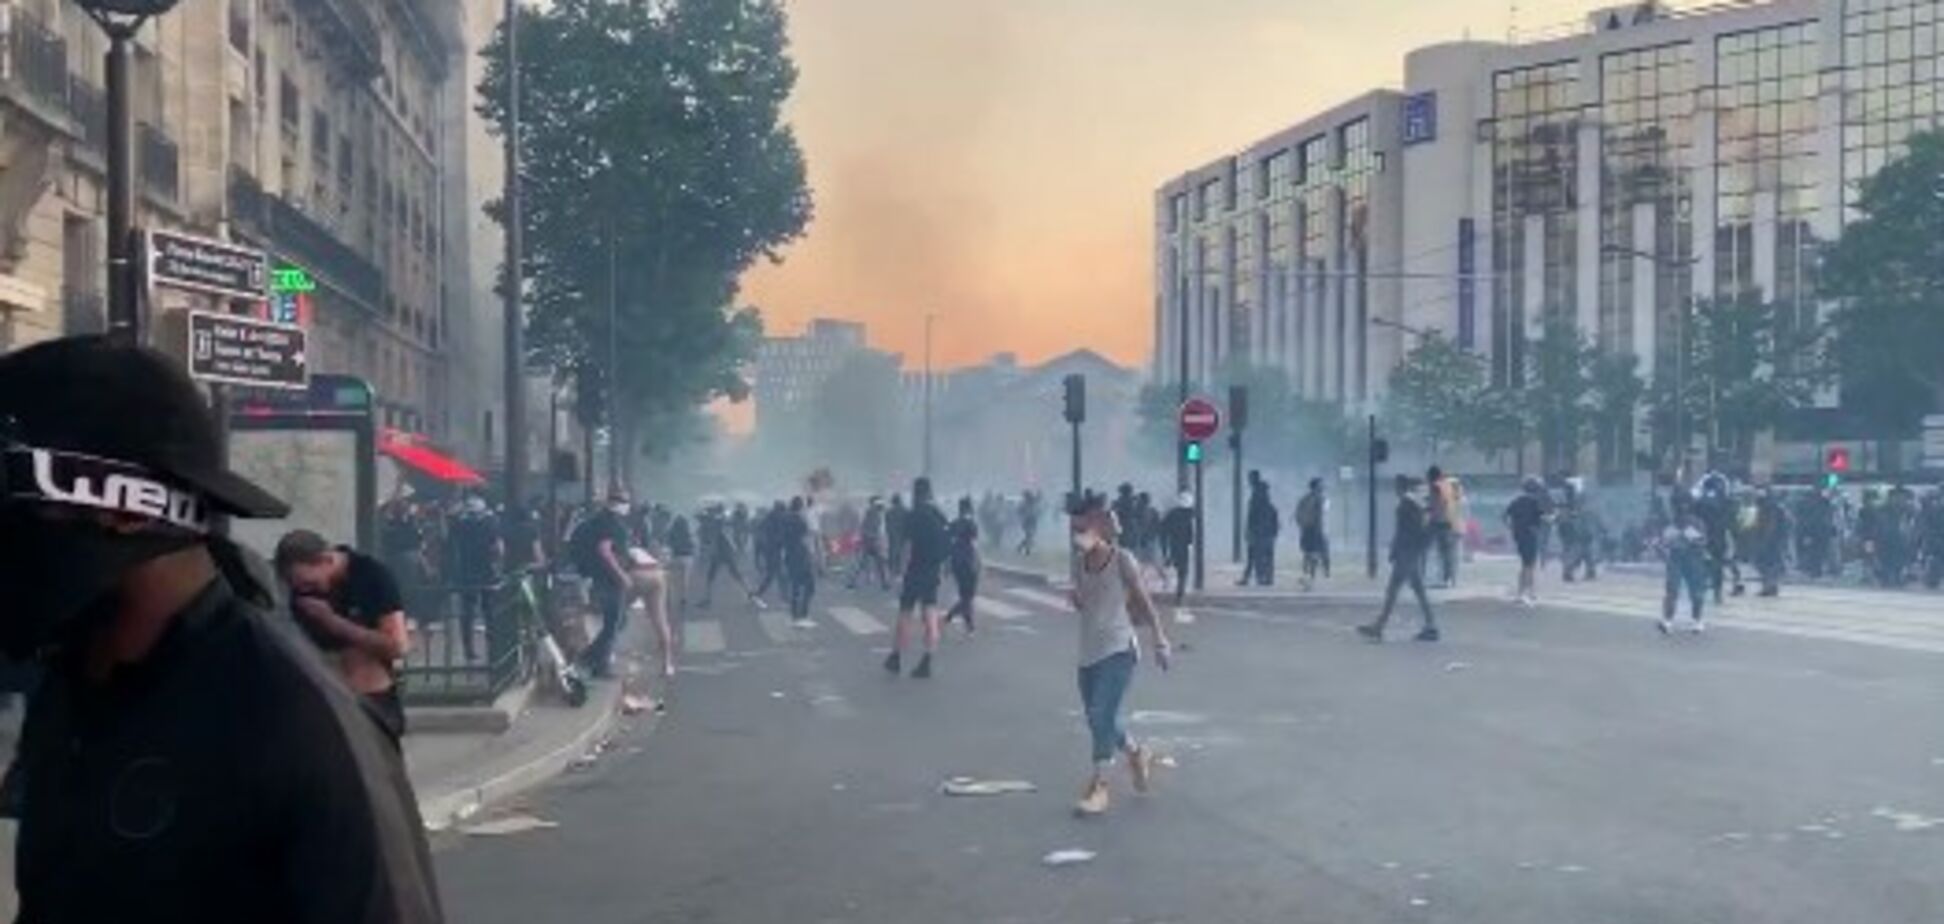 Антирасистские протесты докатились до Франции: полиция применила газ. Фото и видео